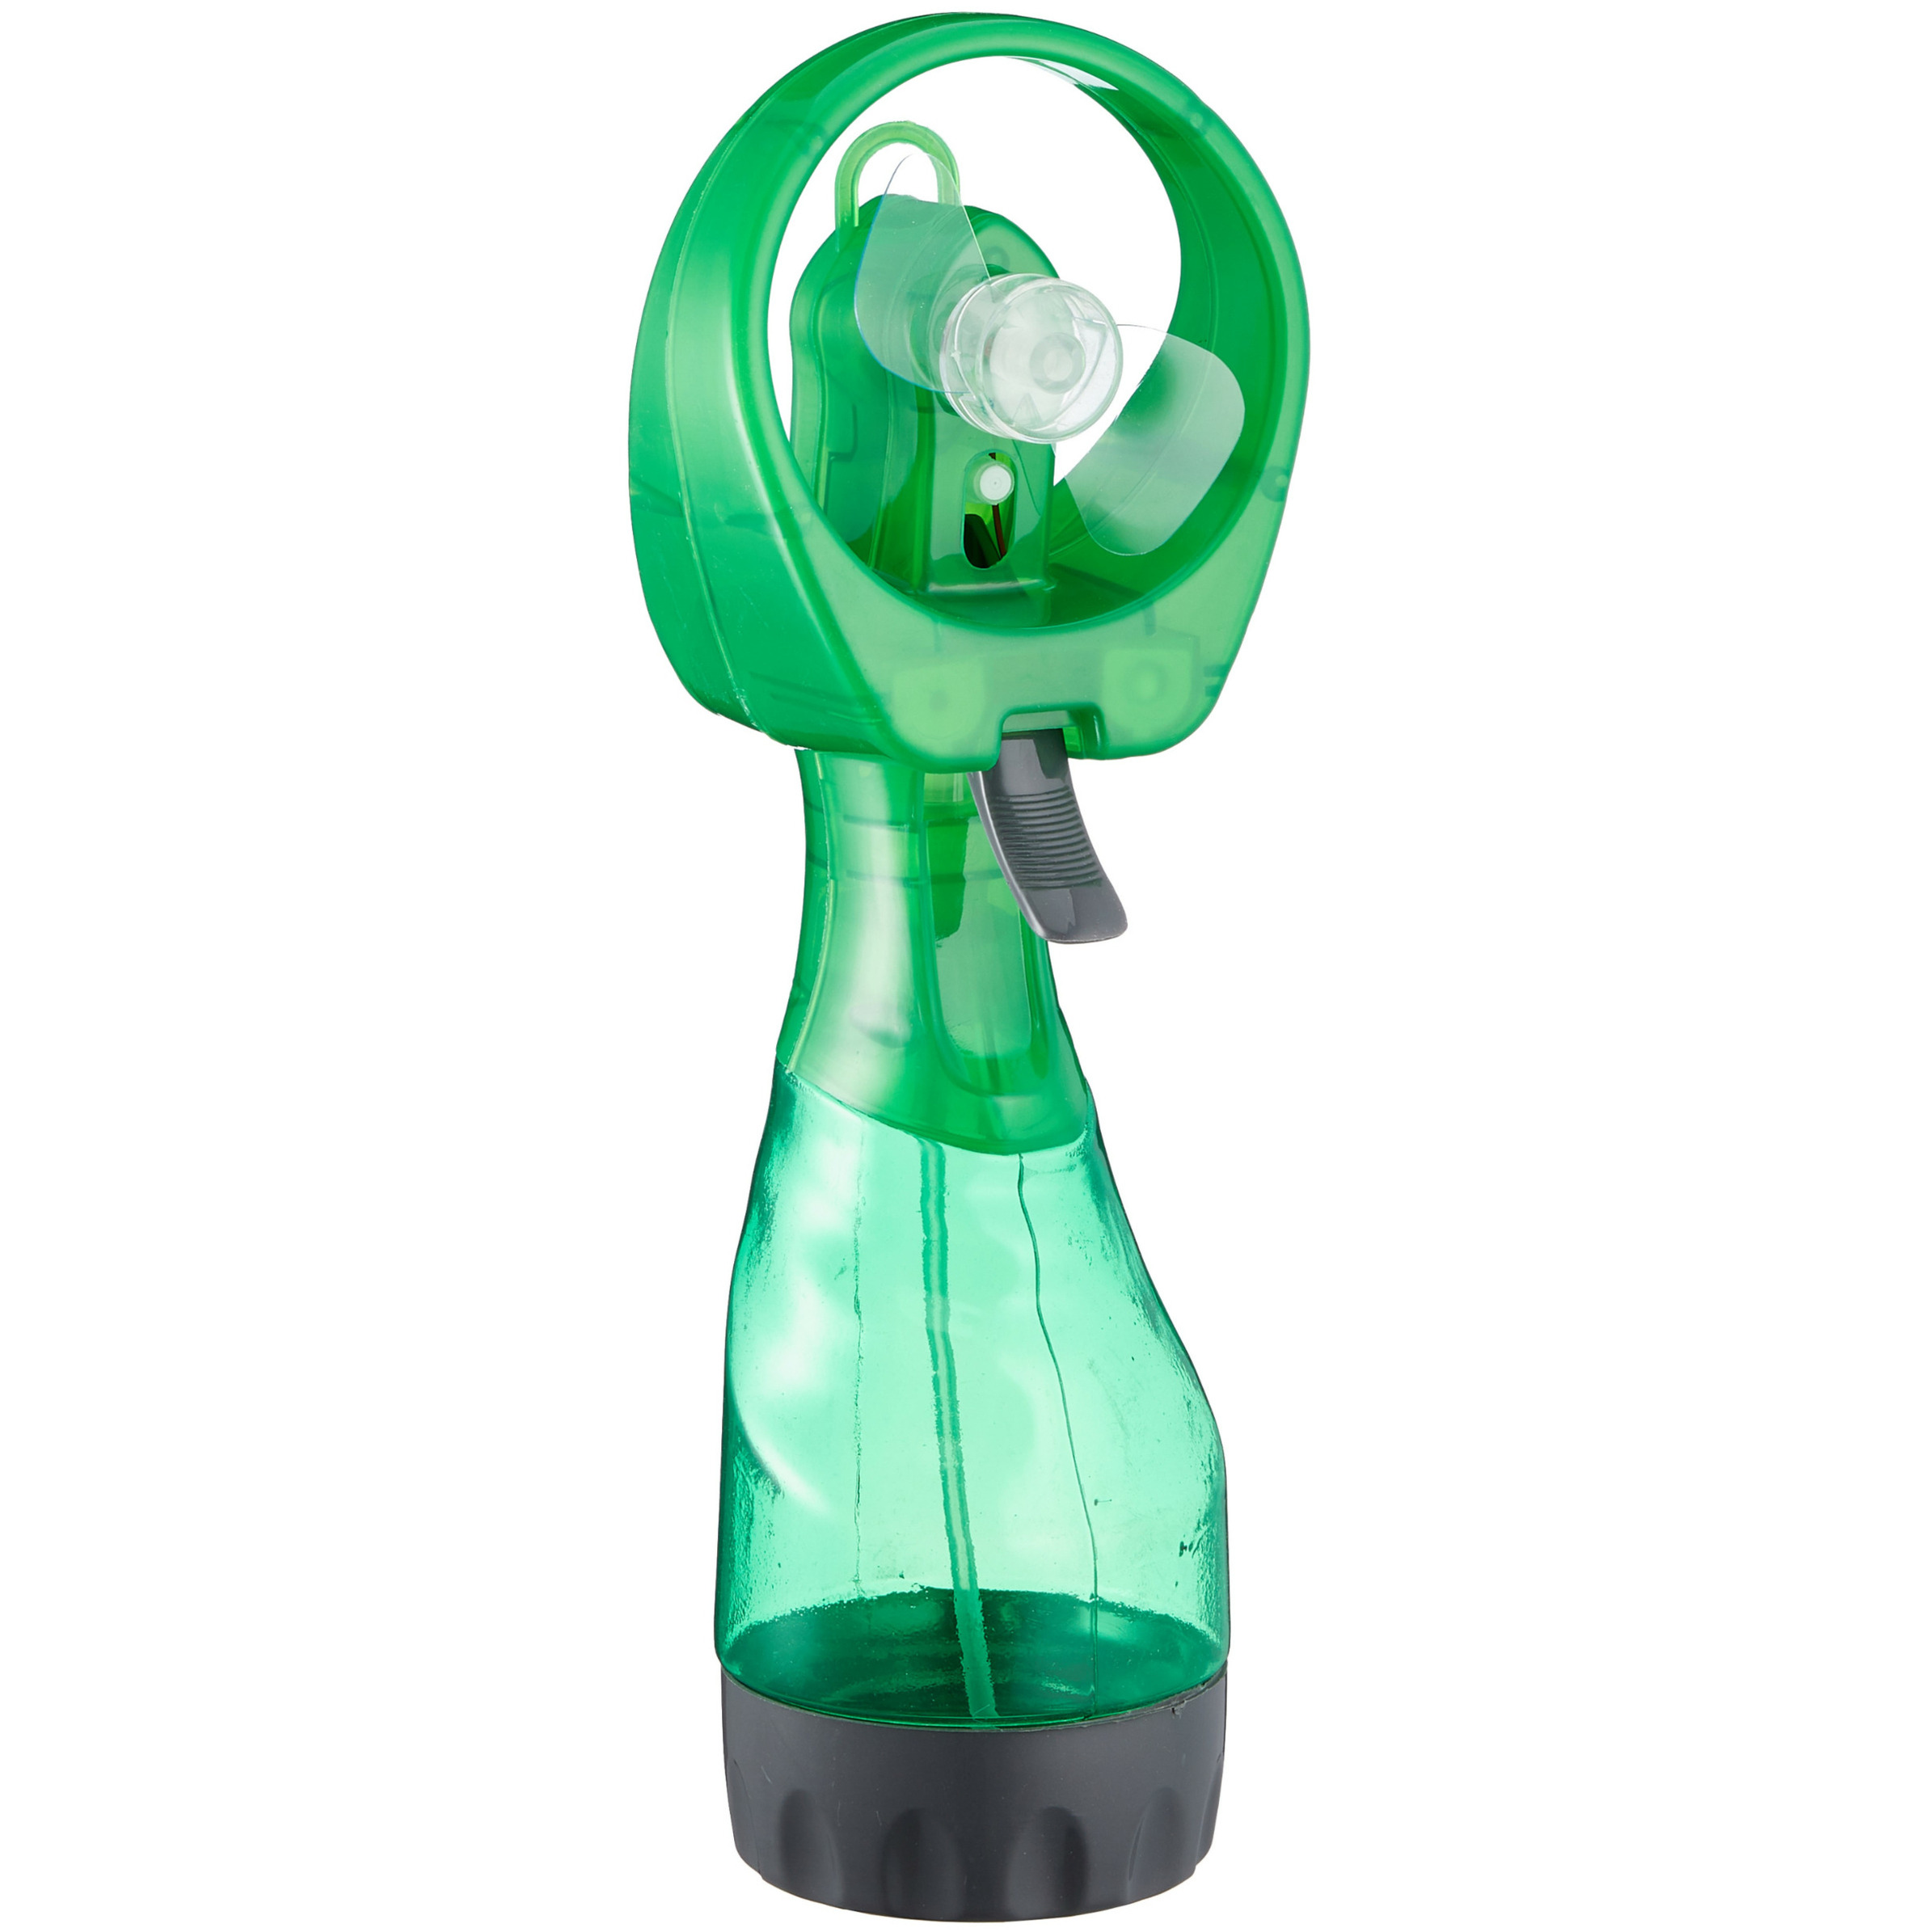 Ventilator-waterverstuiver voor in je hand Verkoeling in zomer 25 cm Groen